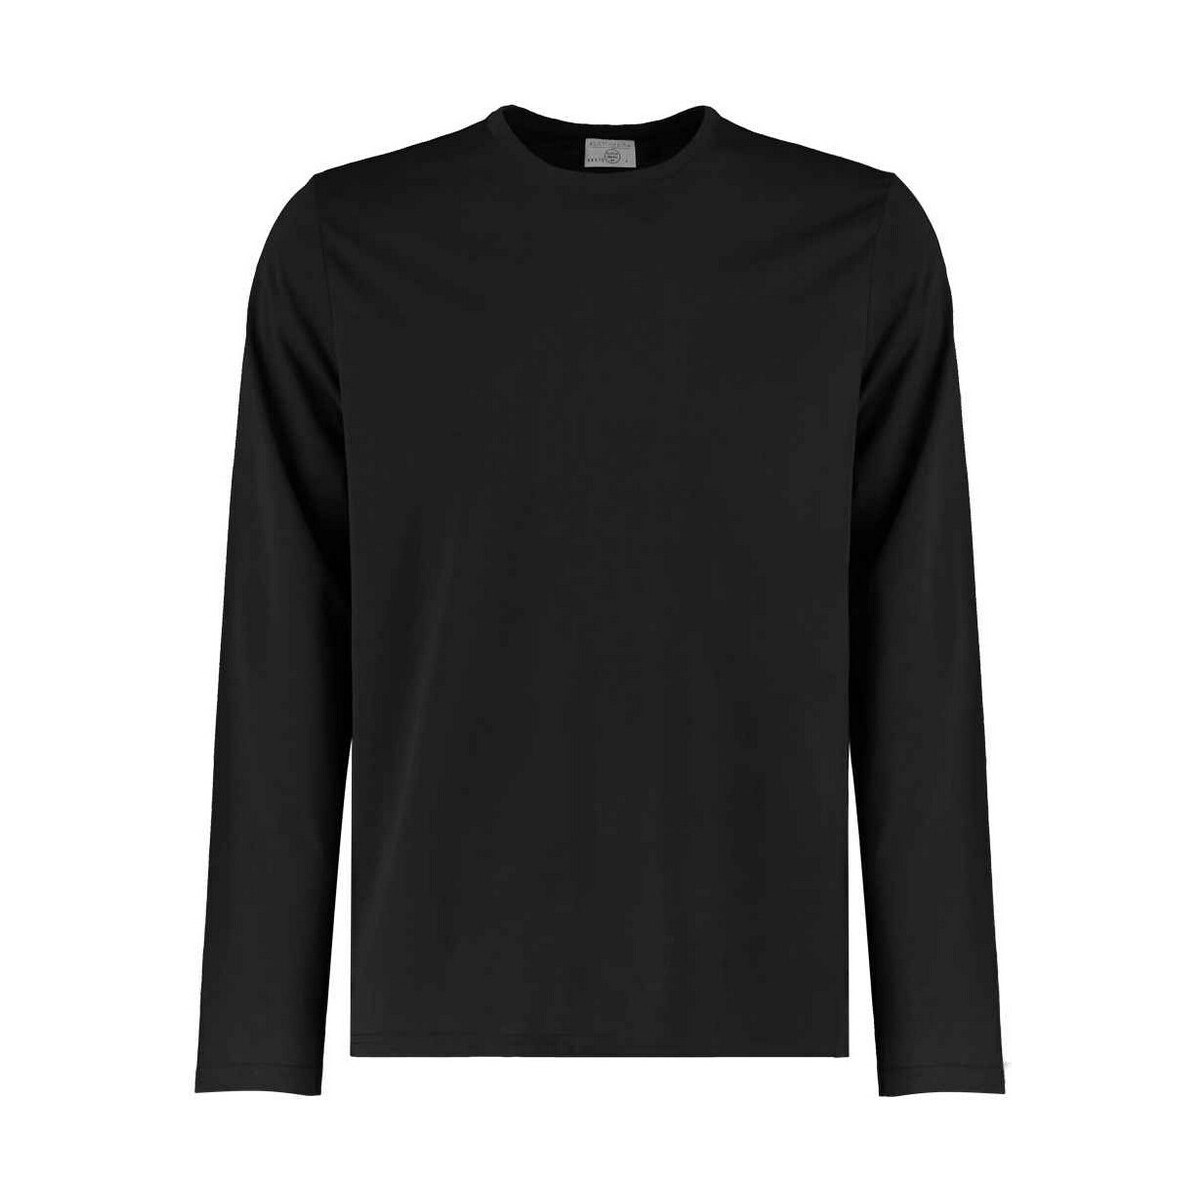 textil Hombre Camisetas manga larga Kustom Kit K510 Negro